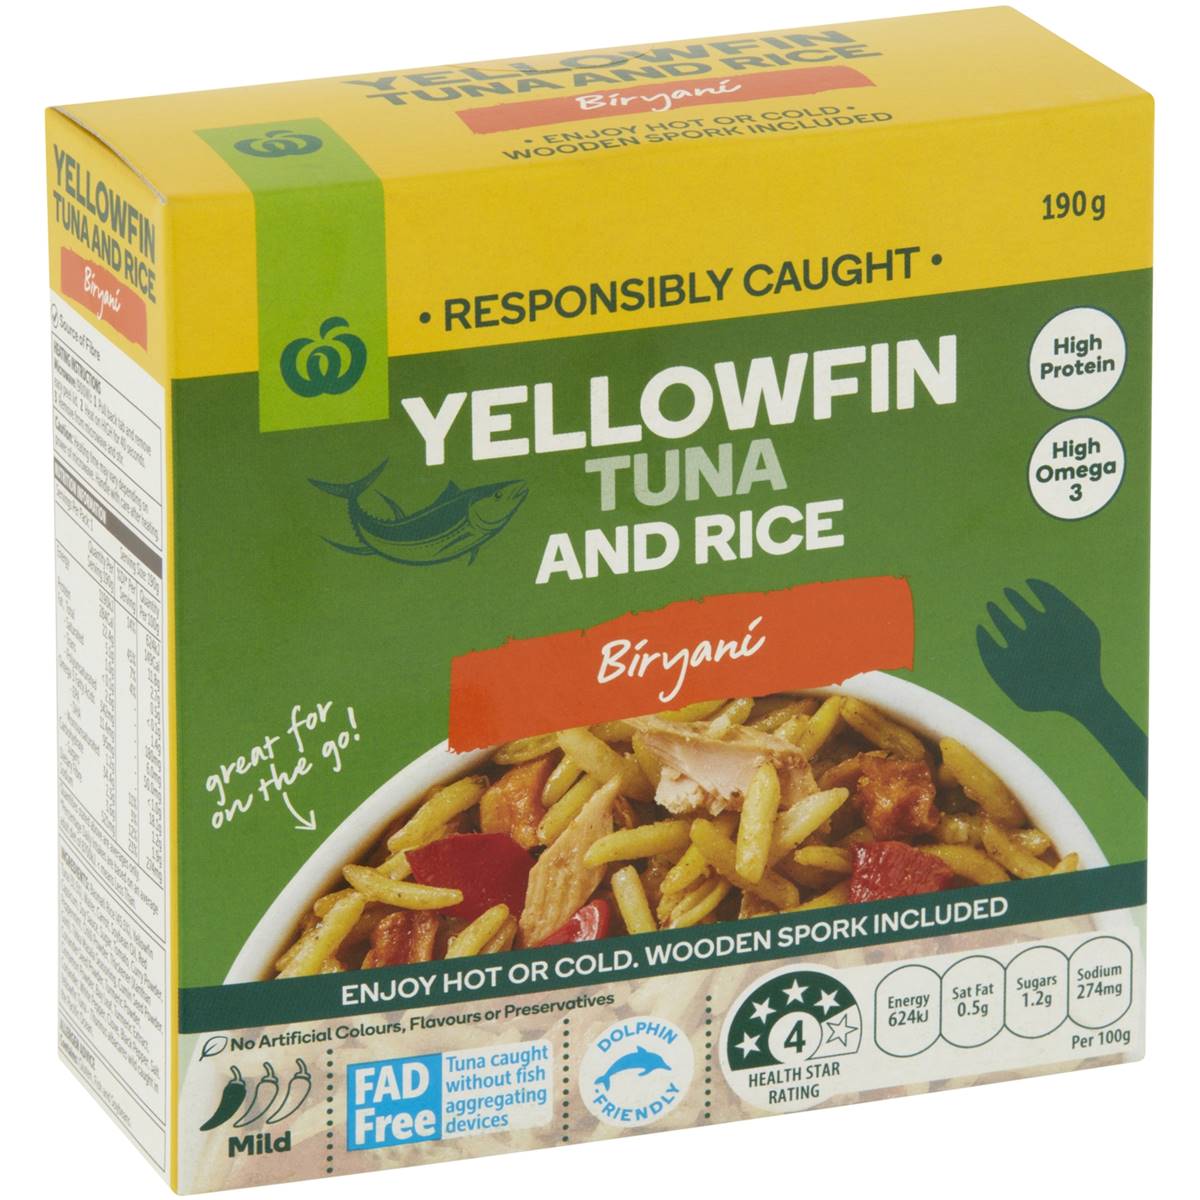 Calories in Woolworths Yellowfin Tuna & Rice Biryani